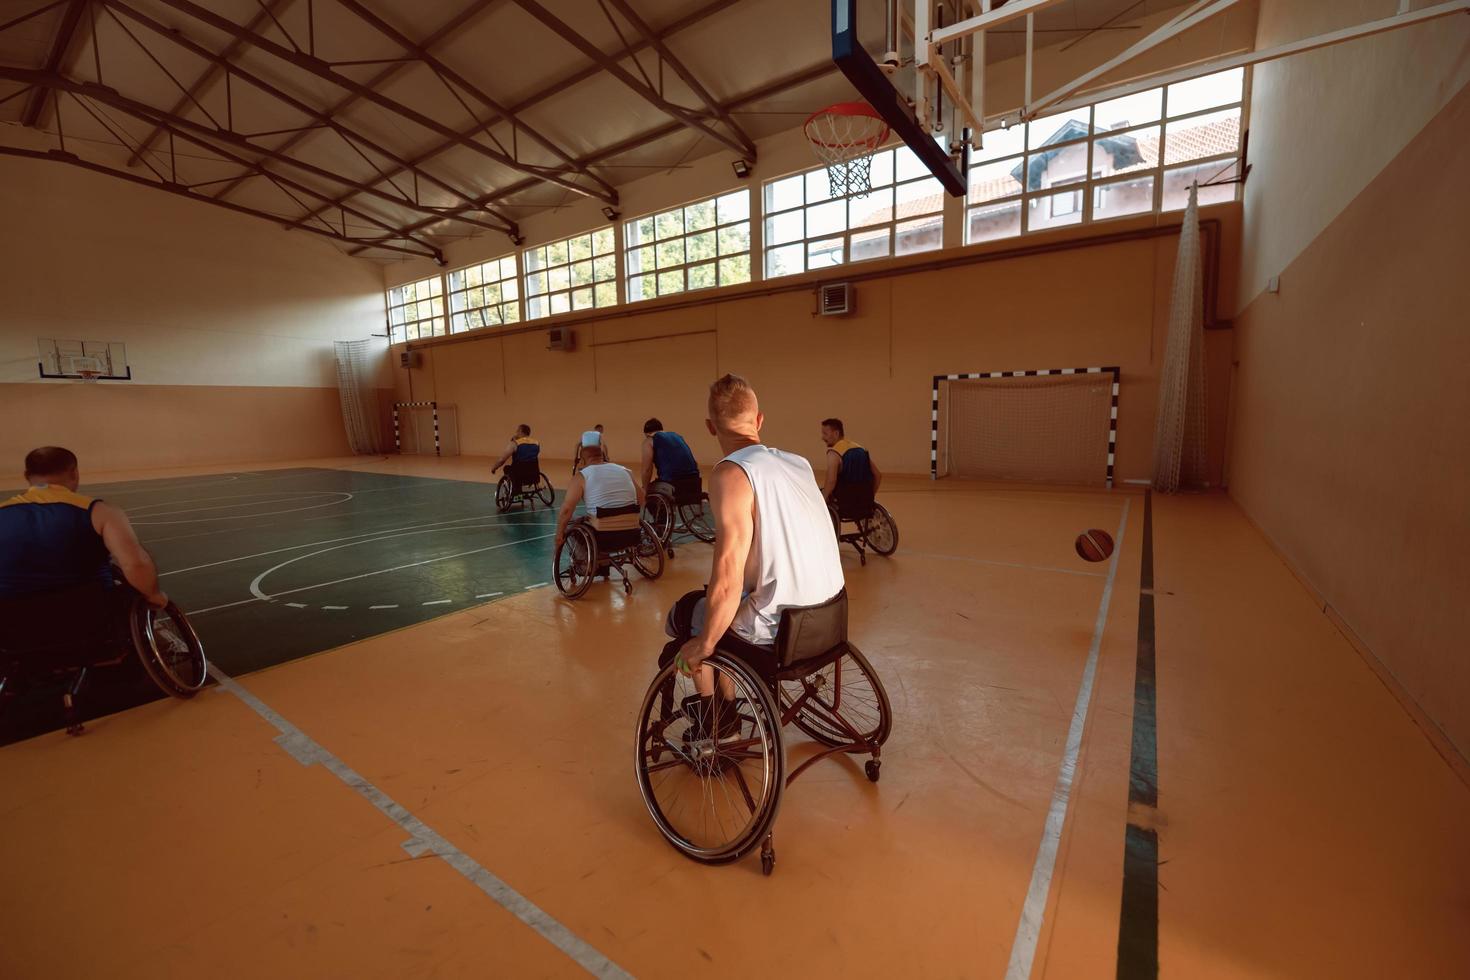 gehandicapt oorlog veteranen gemengd ras en leeftijd basketbal teams in rolstoelen spelen een opleiding bij elkaar passen in een sport- Sportschool hal. gehandicapten mensen revalidatie en inclusie concept foto